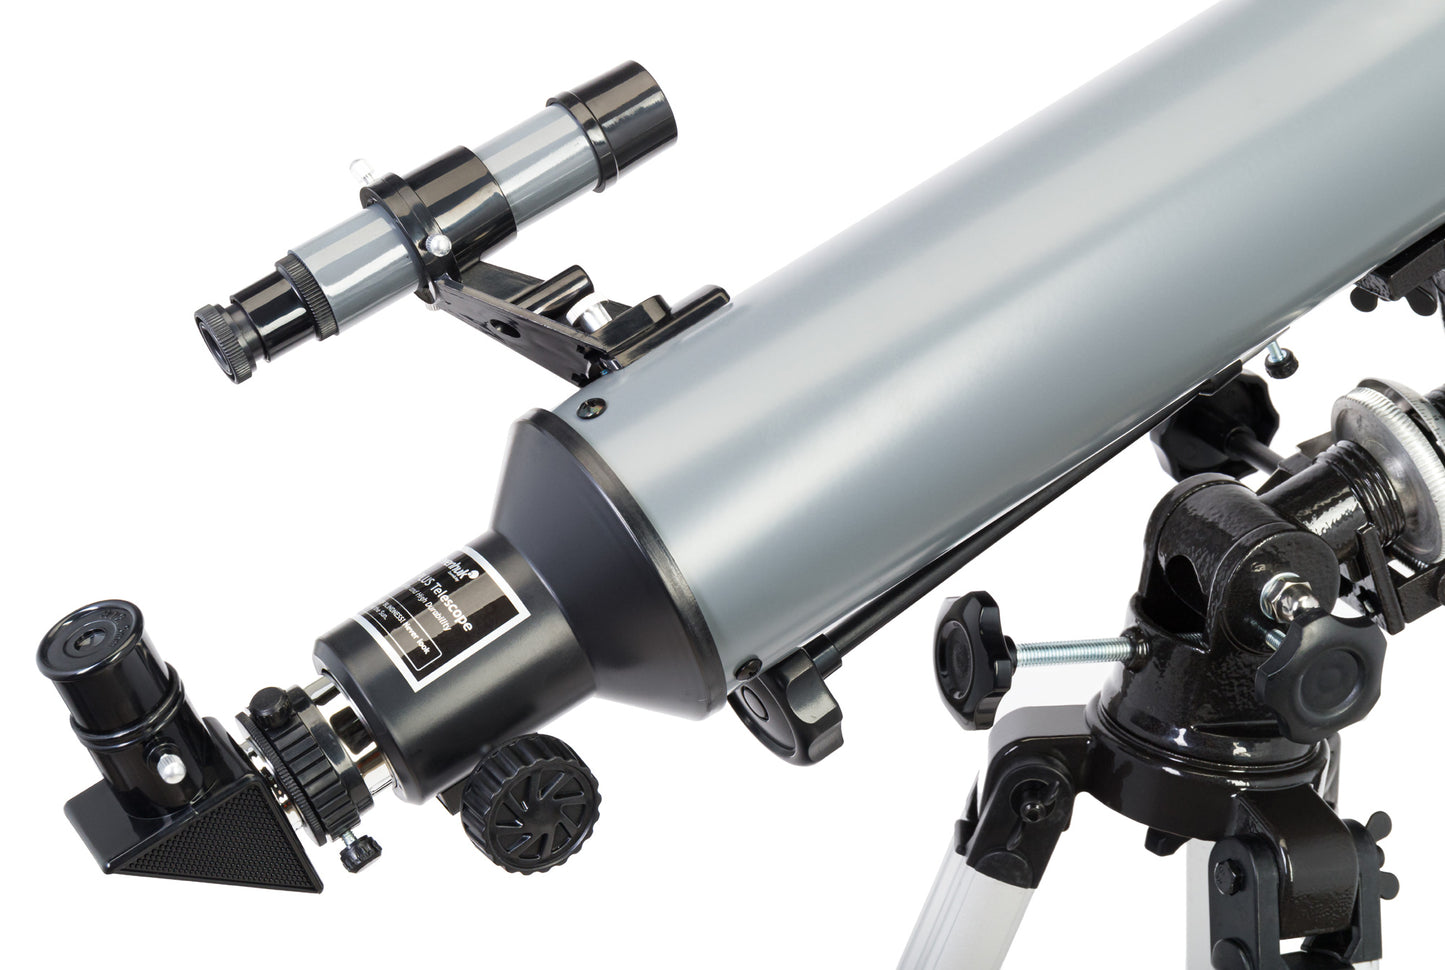 80/900 Blitz PLUS EQ1 Telescope